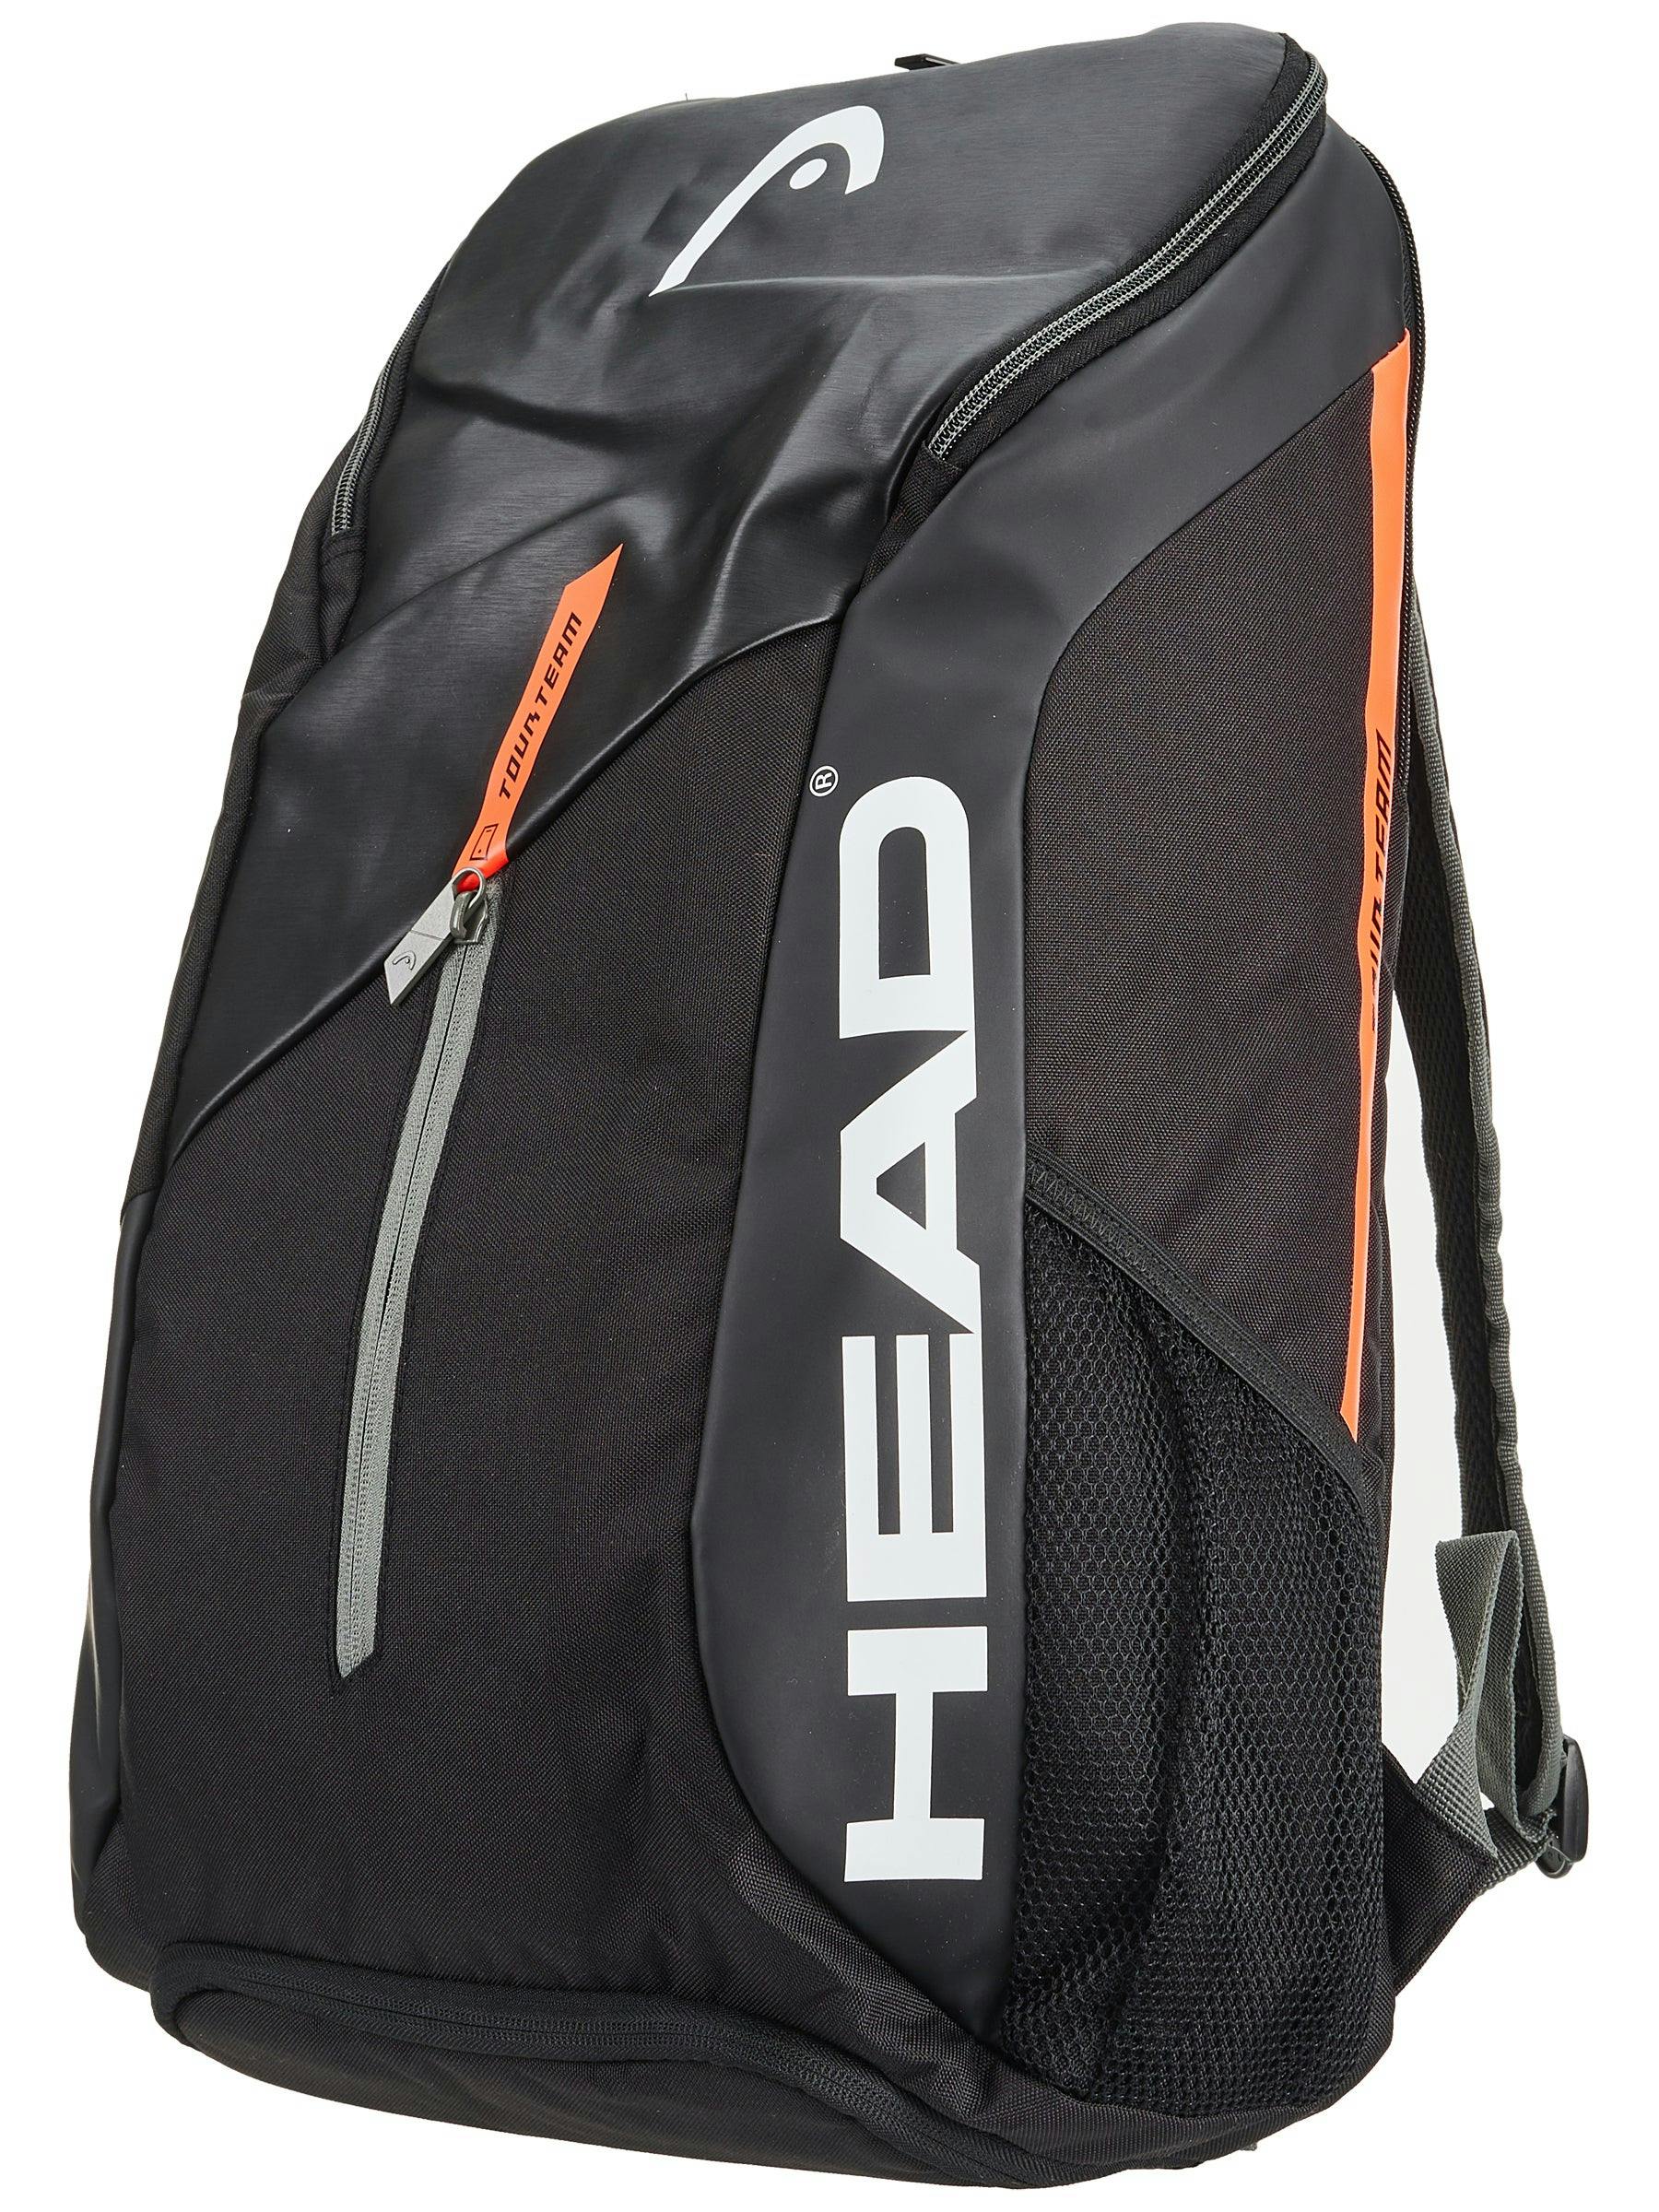 Head Tour Team Tennis Backpack